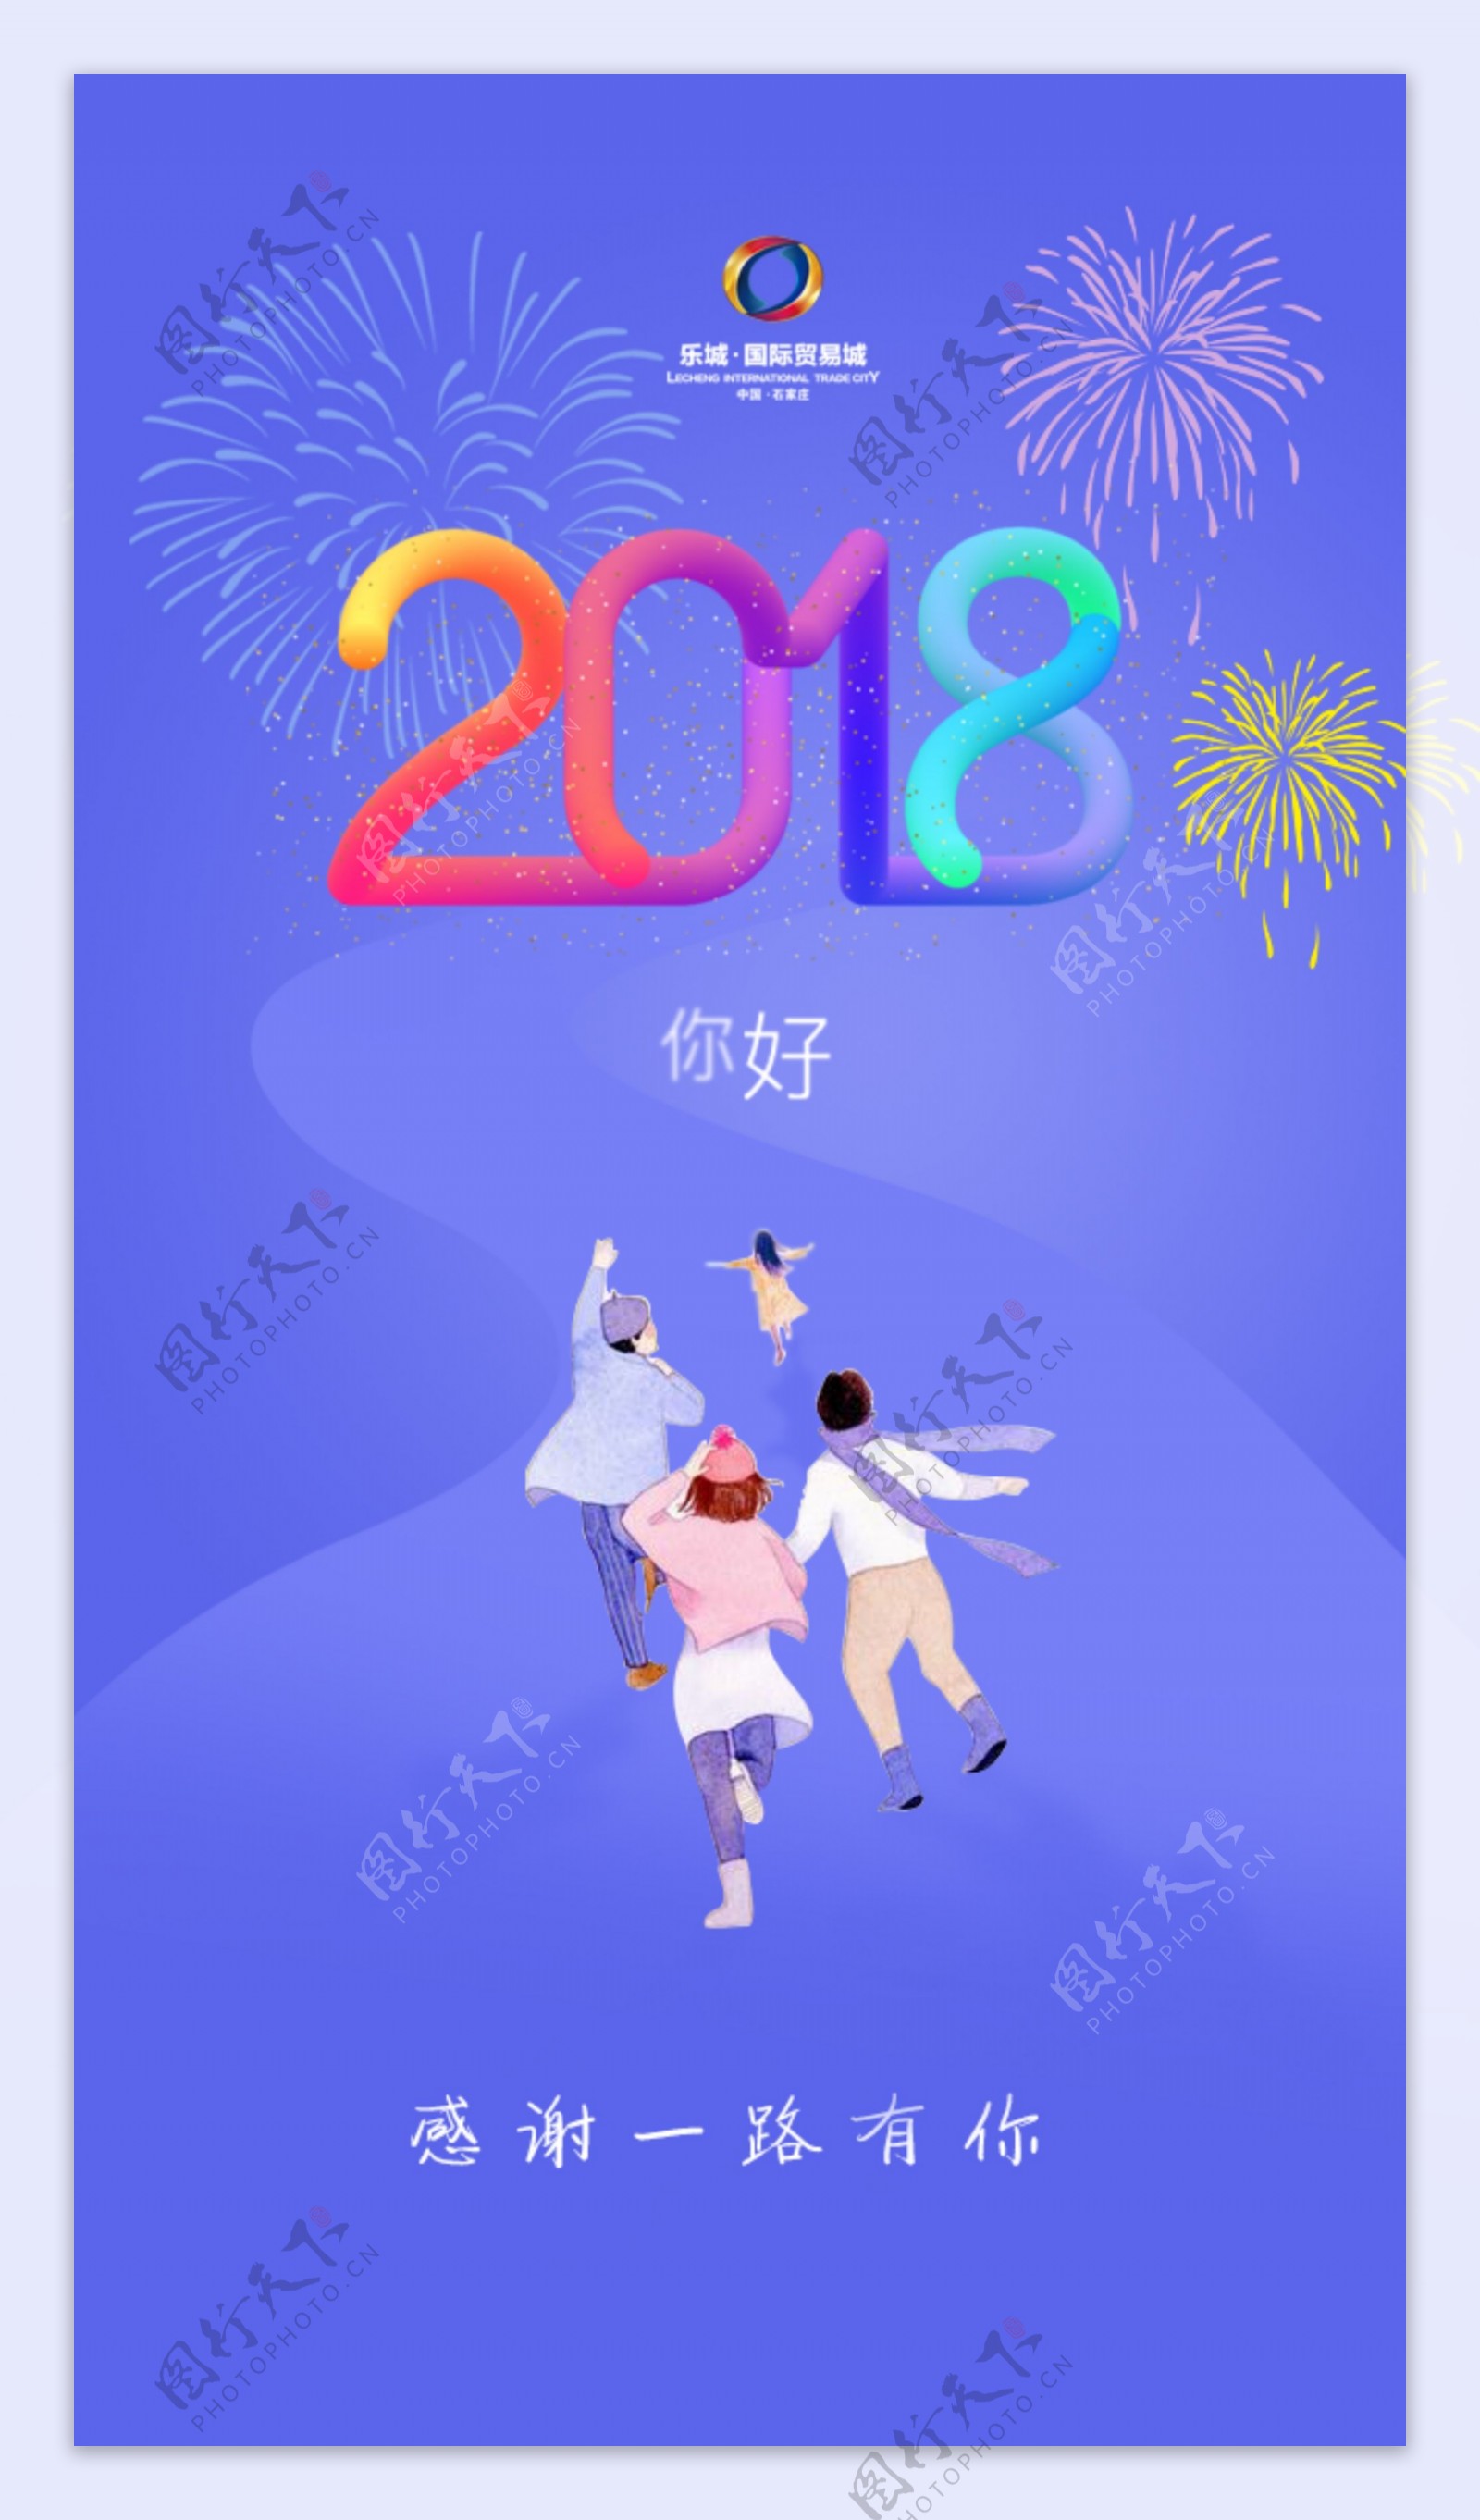 2018新春微信朋友圈人物插画宣传海报